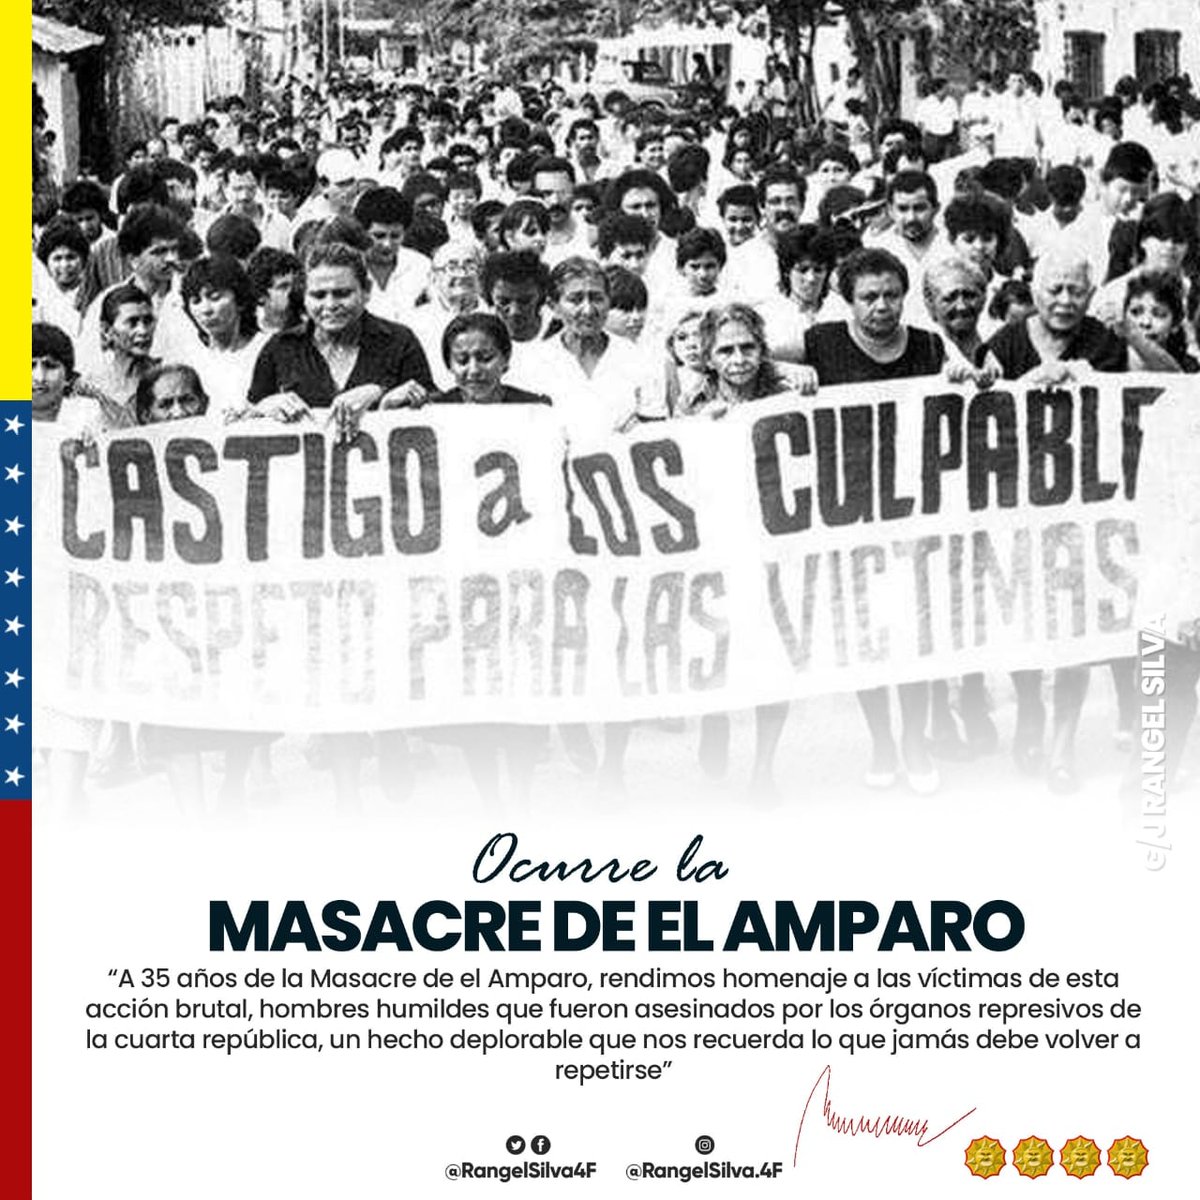 Se cumplen 35 años de la Masacre de El Amparo, en el estado Apure, en donde el puntofijismo, con el pretexto la lucha contra la guerrilla colombiana, asesinó a 14 pescadores. El pueblo no olvida esas acciones criminales. #PasionYEsfuerzo